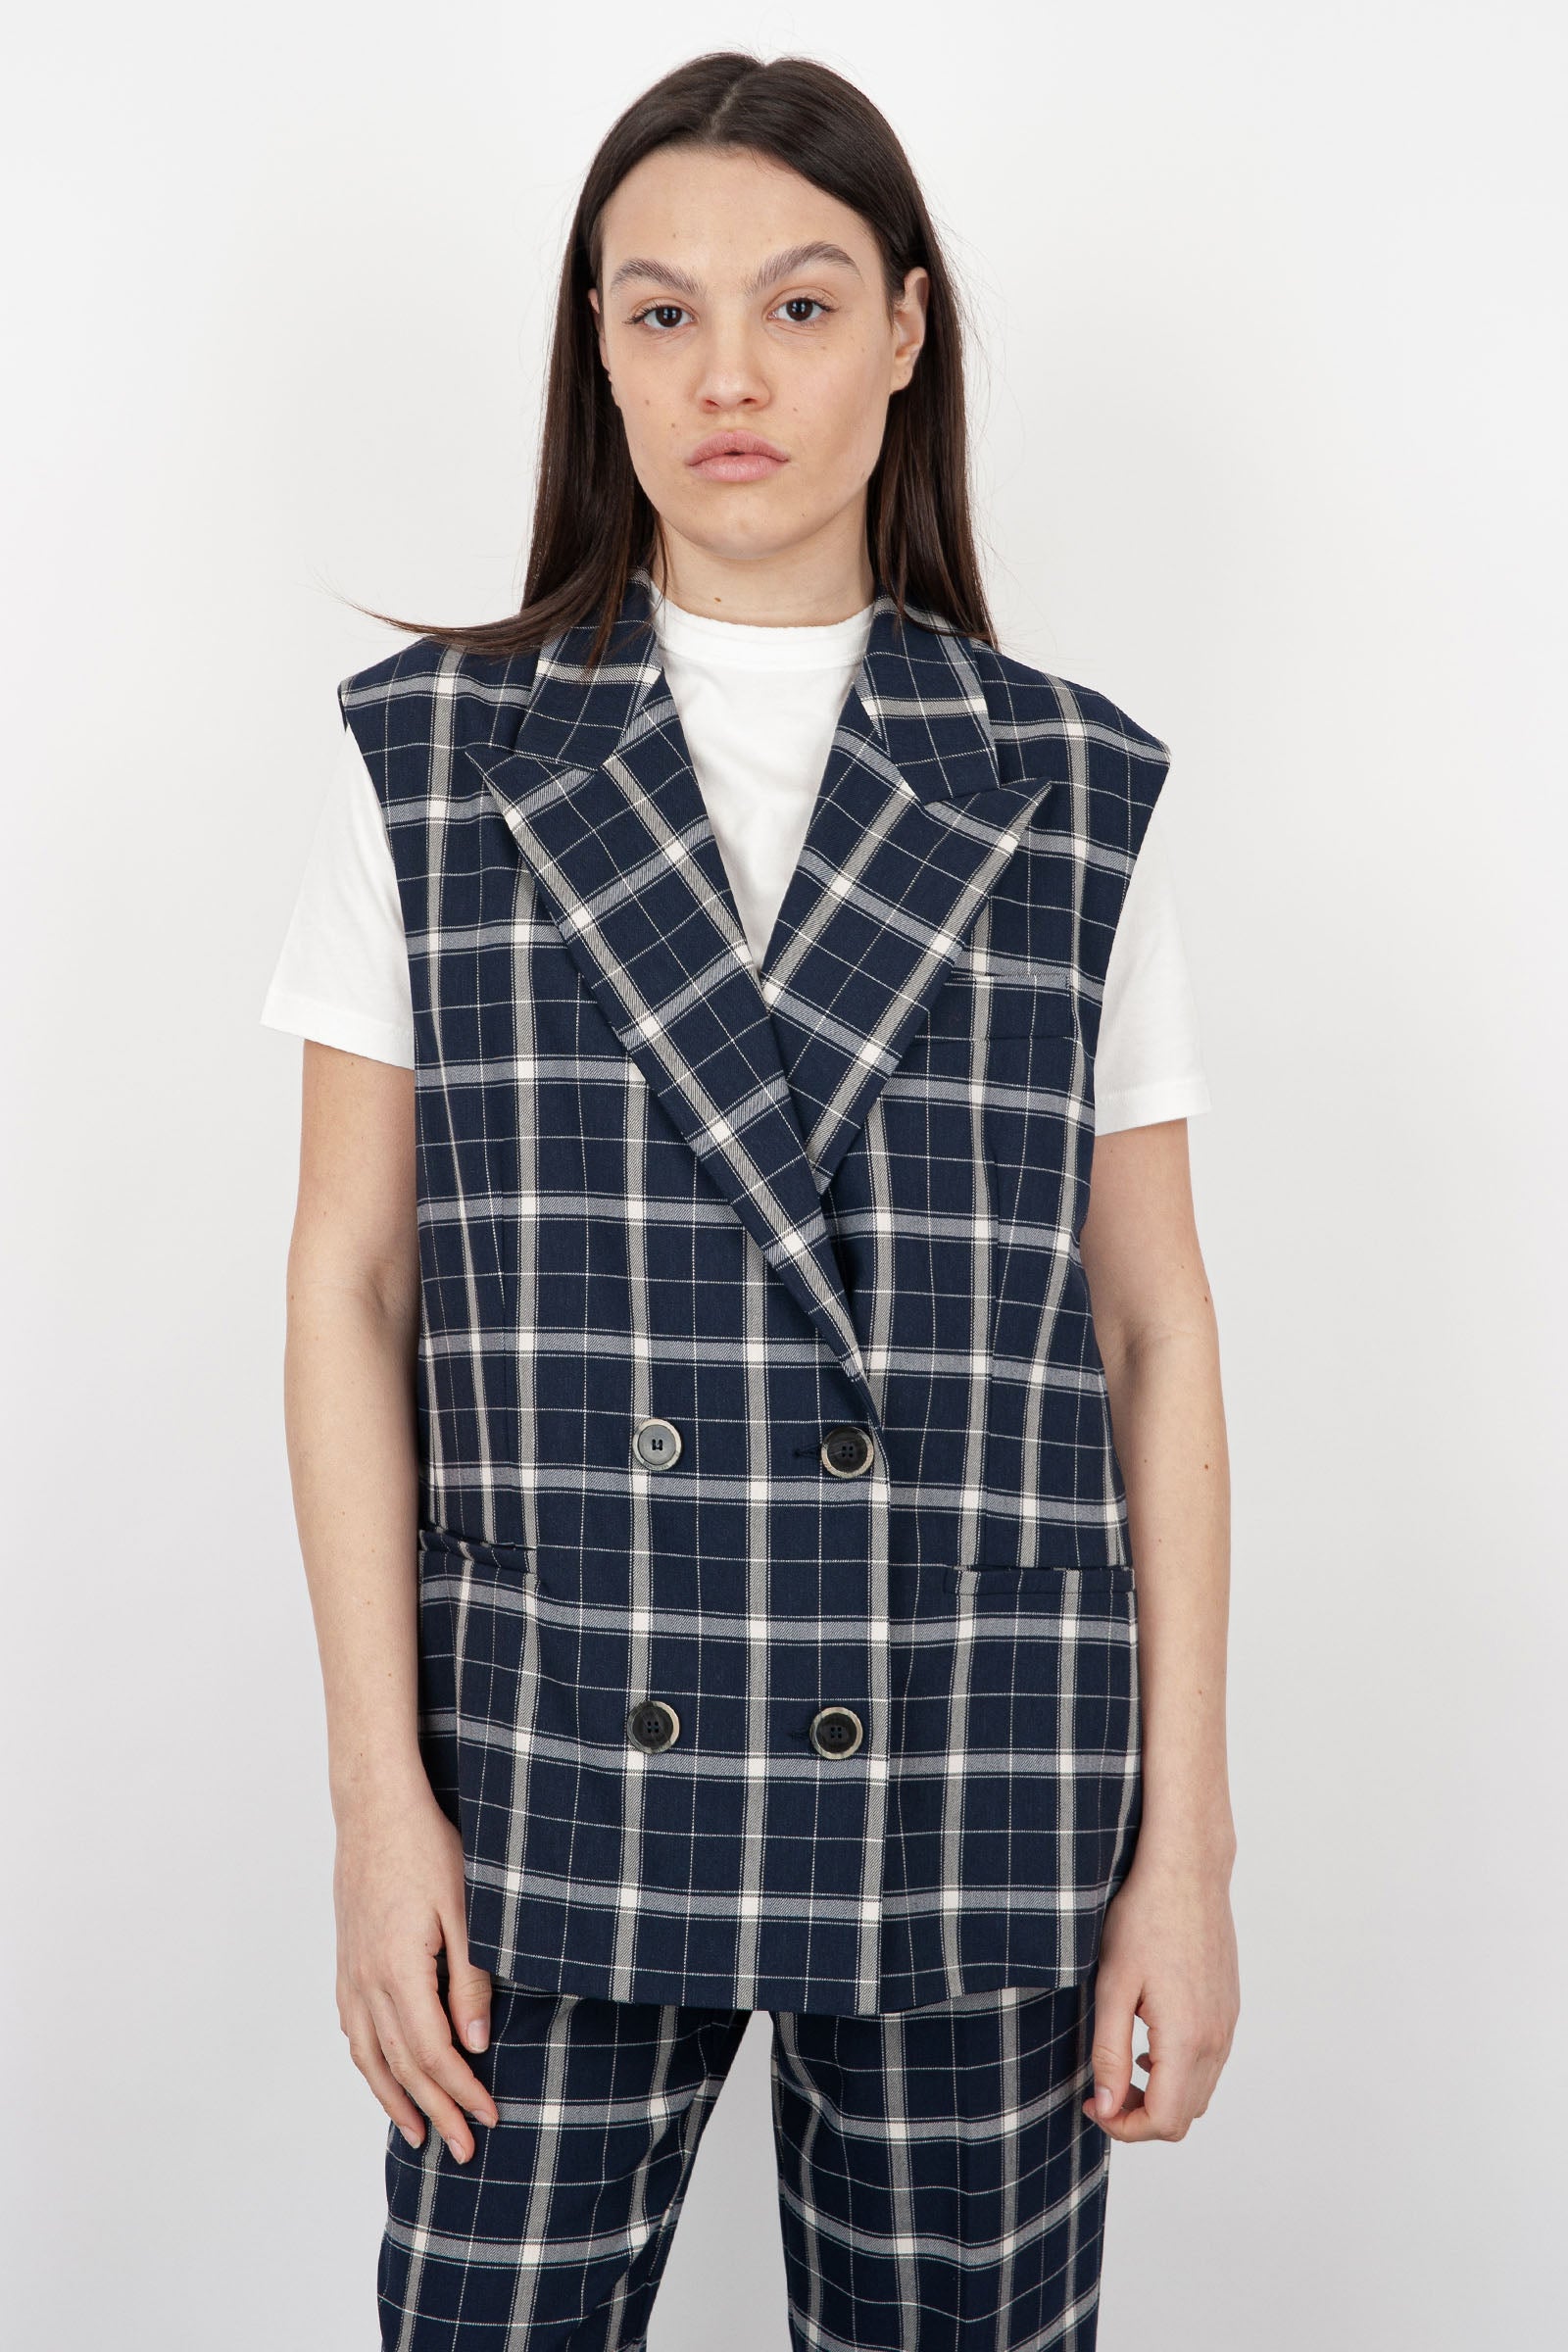 SemiCouture Alisha Synthetic Vest in Cream - 5